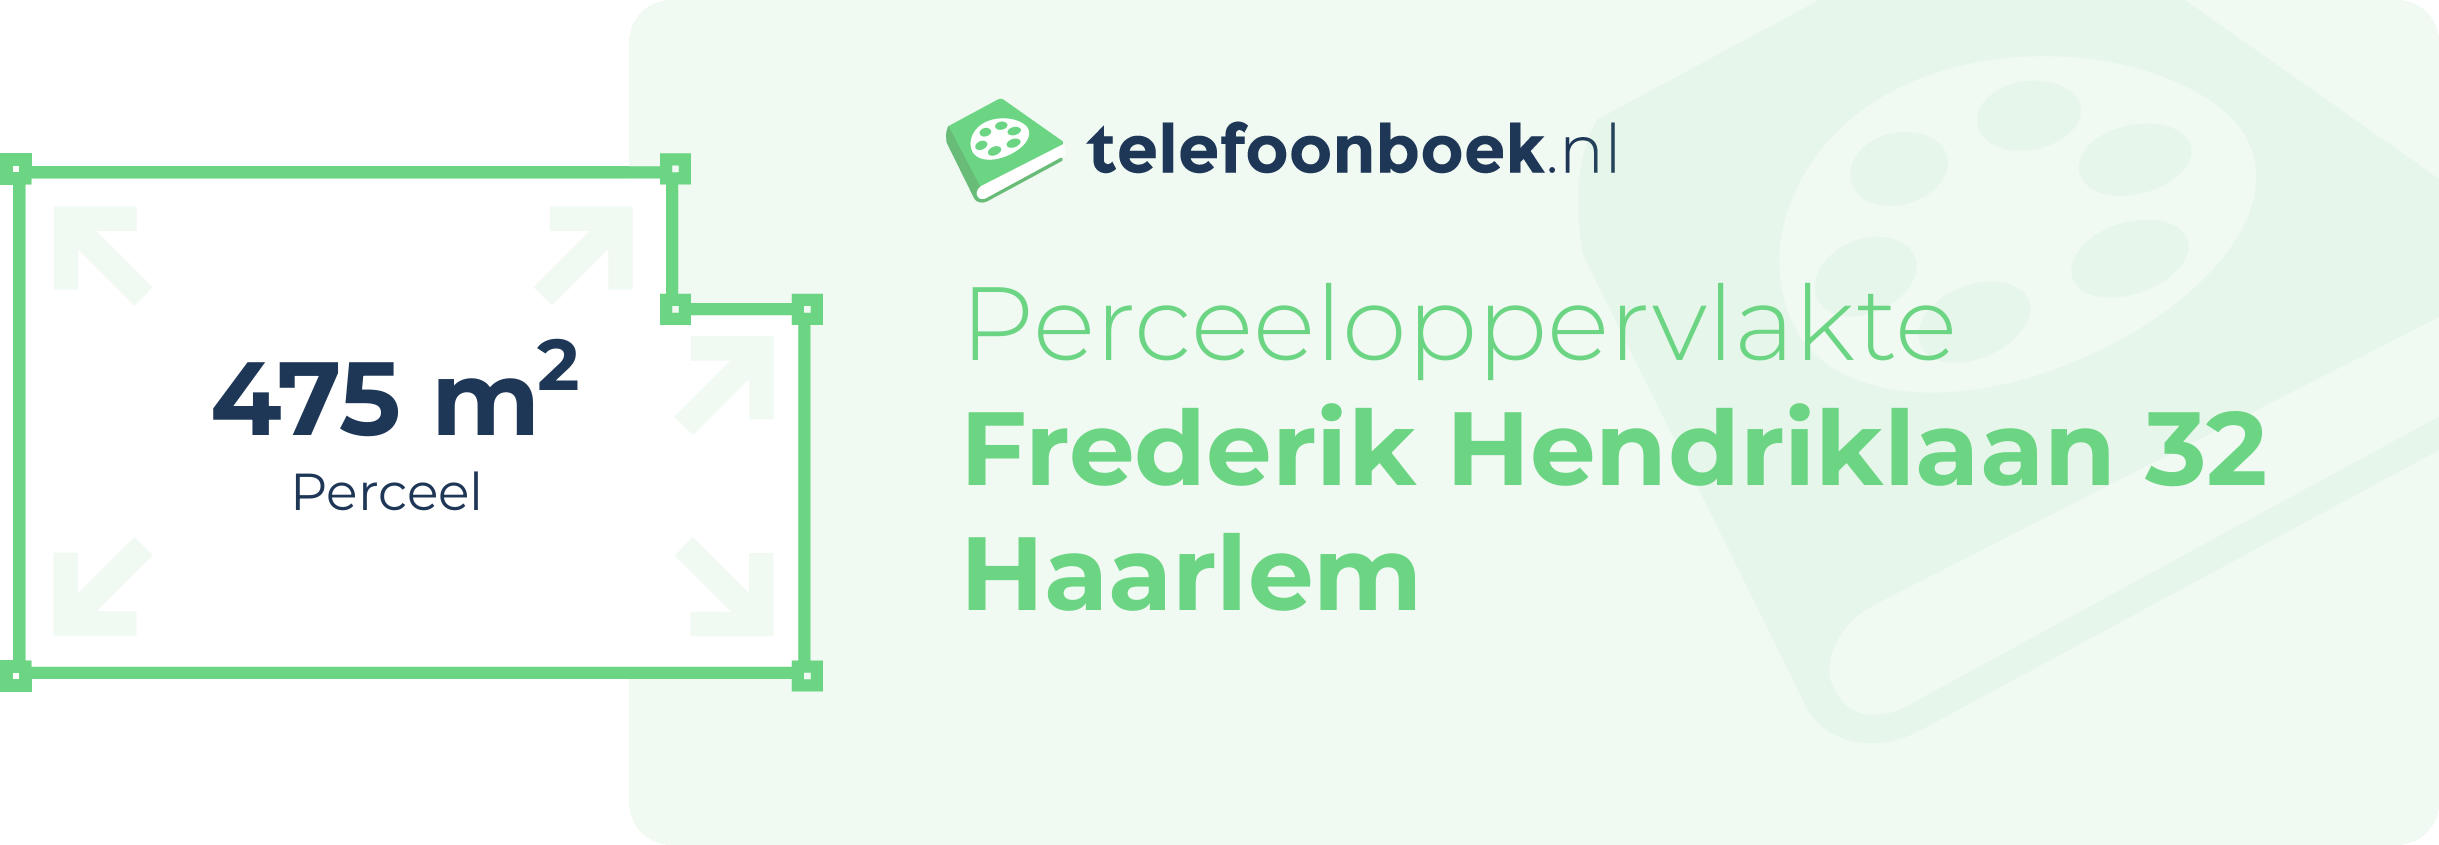 Perceeloppervlakte Frederik Hendriklaan 32 Haarlem